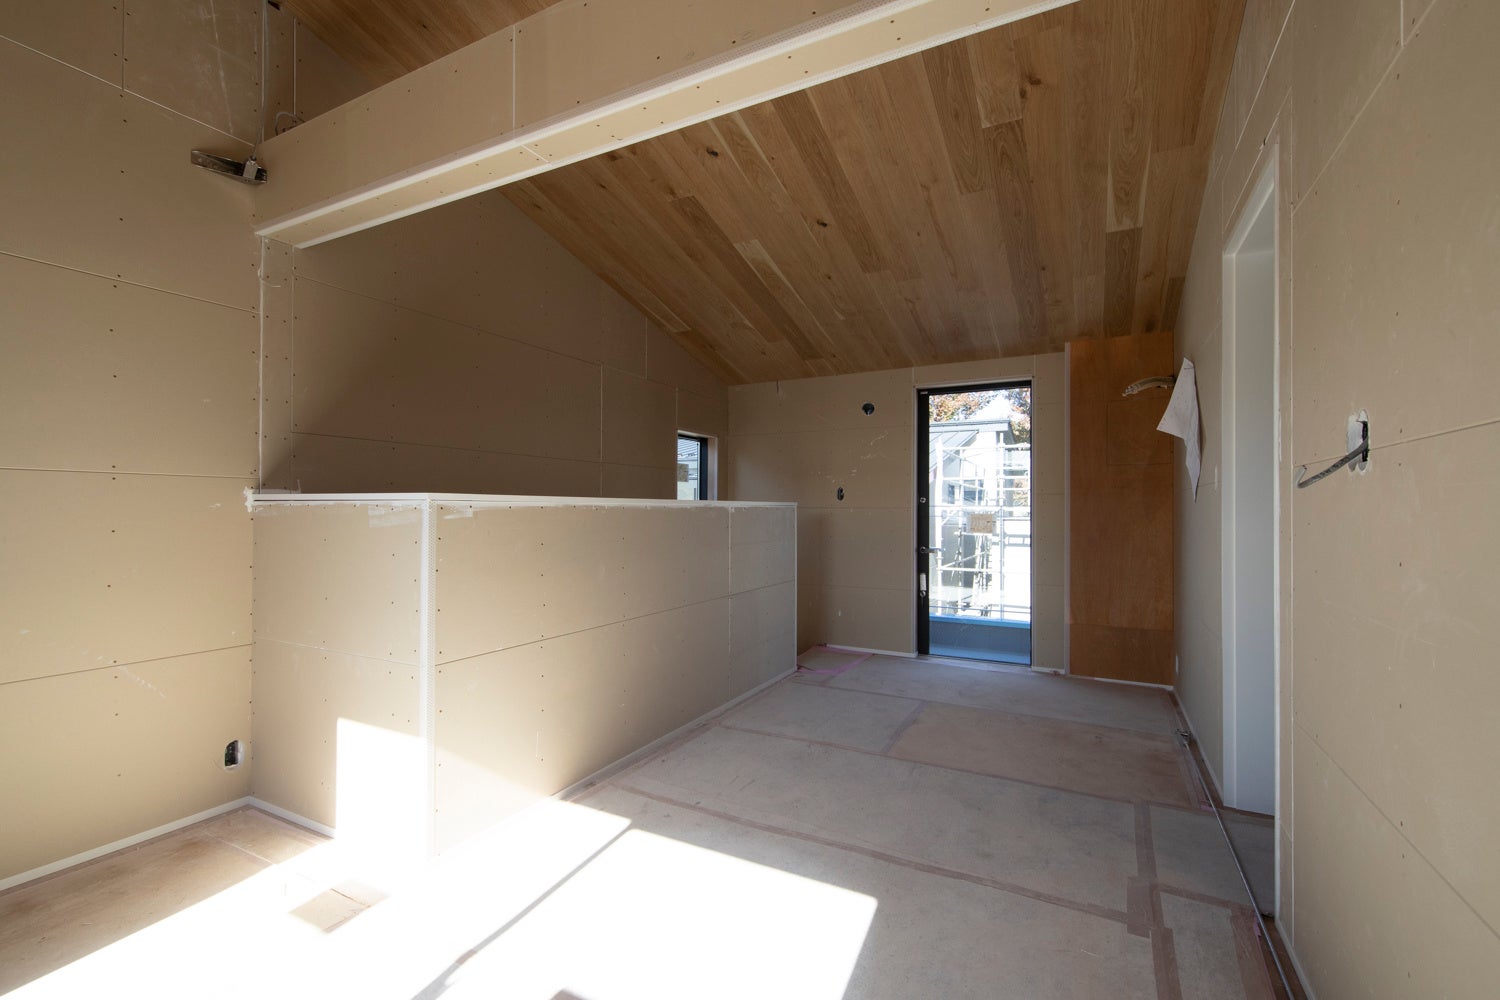 LEED認証取得の賃貸住宅「鈴森village」、埼玉県和光市に誕生のサブ画像4_ゆったりとした階段の踊り場スペースは、居室のように使用できる